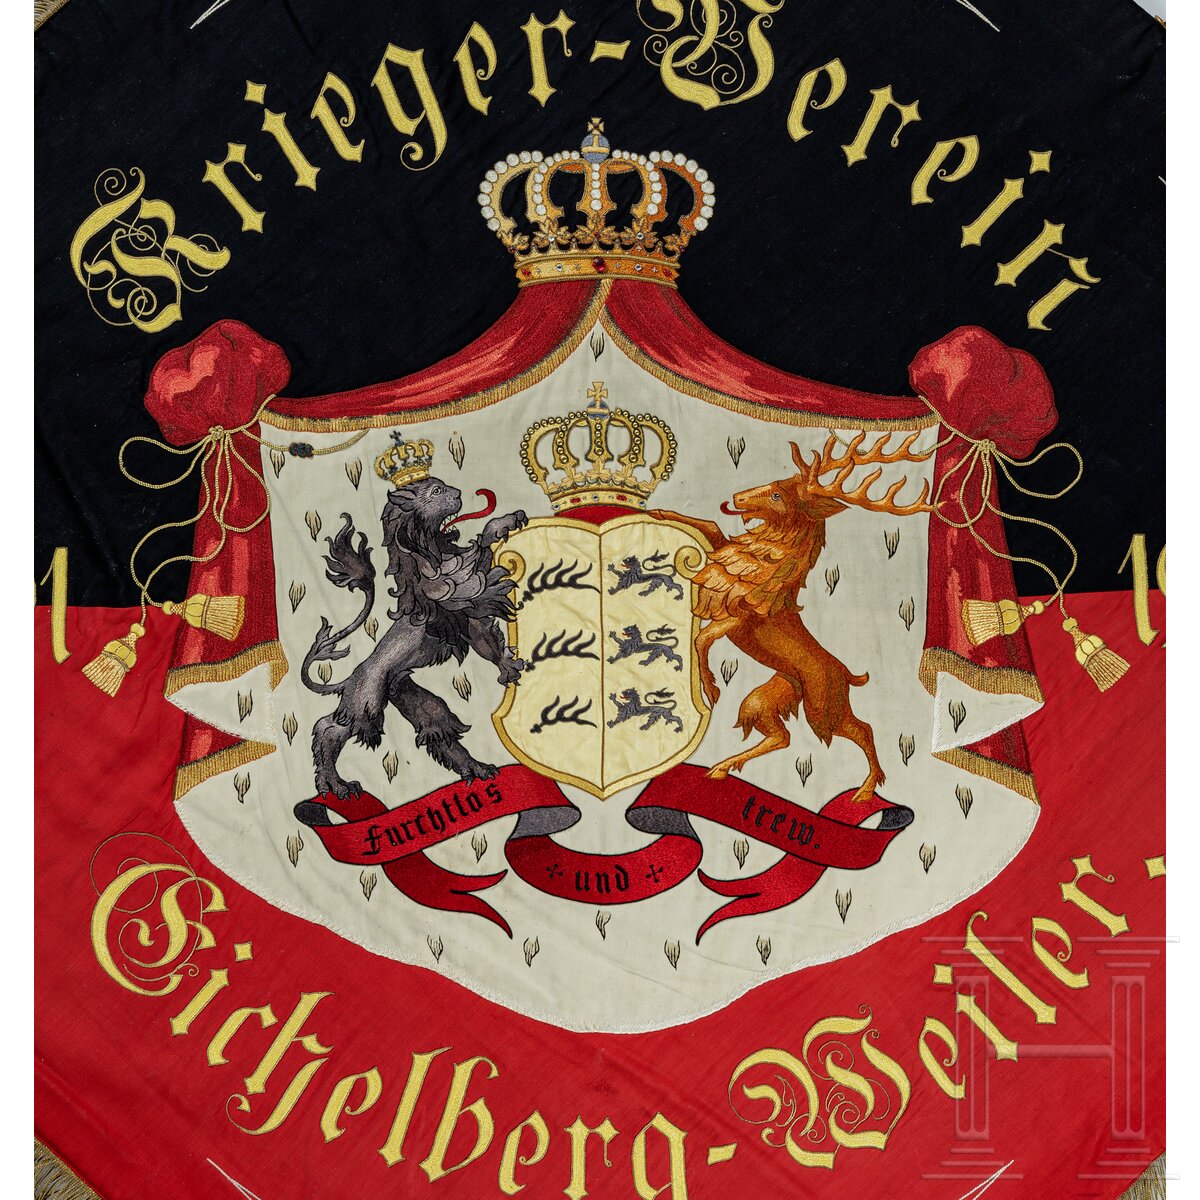 Fahne des Kriegervereins Eichelberg-Weiler, Württemberg, 1891 - 1913 - Image 4 of 4